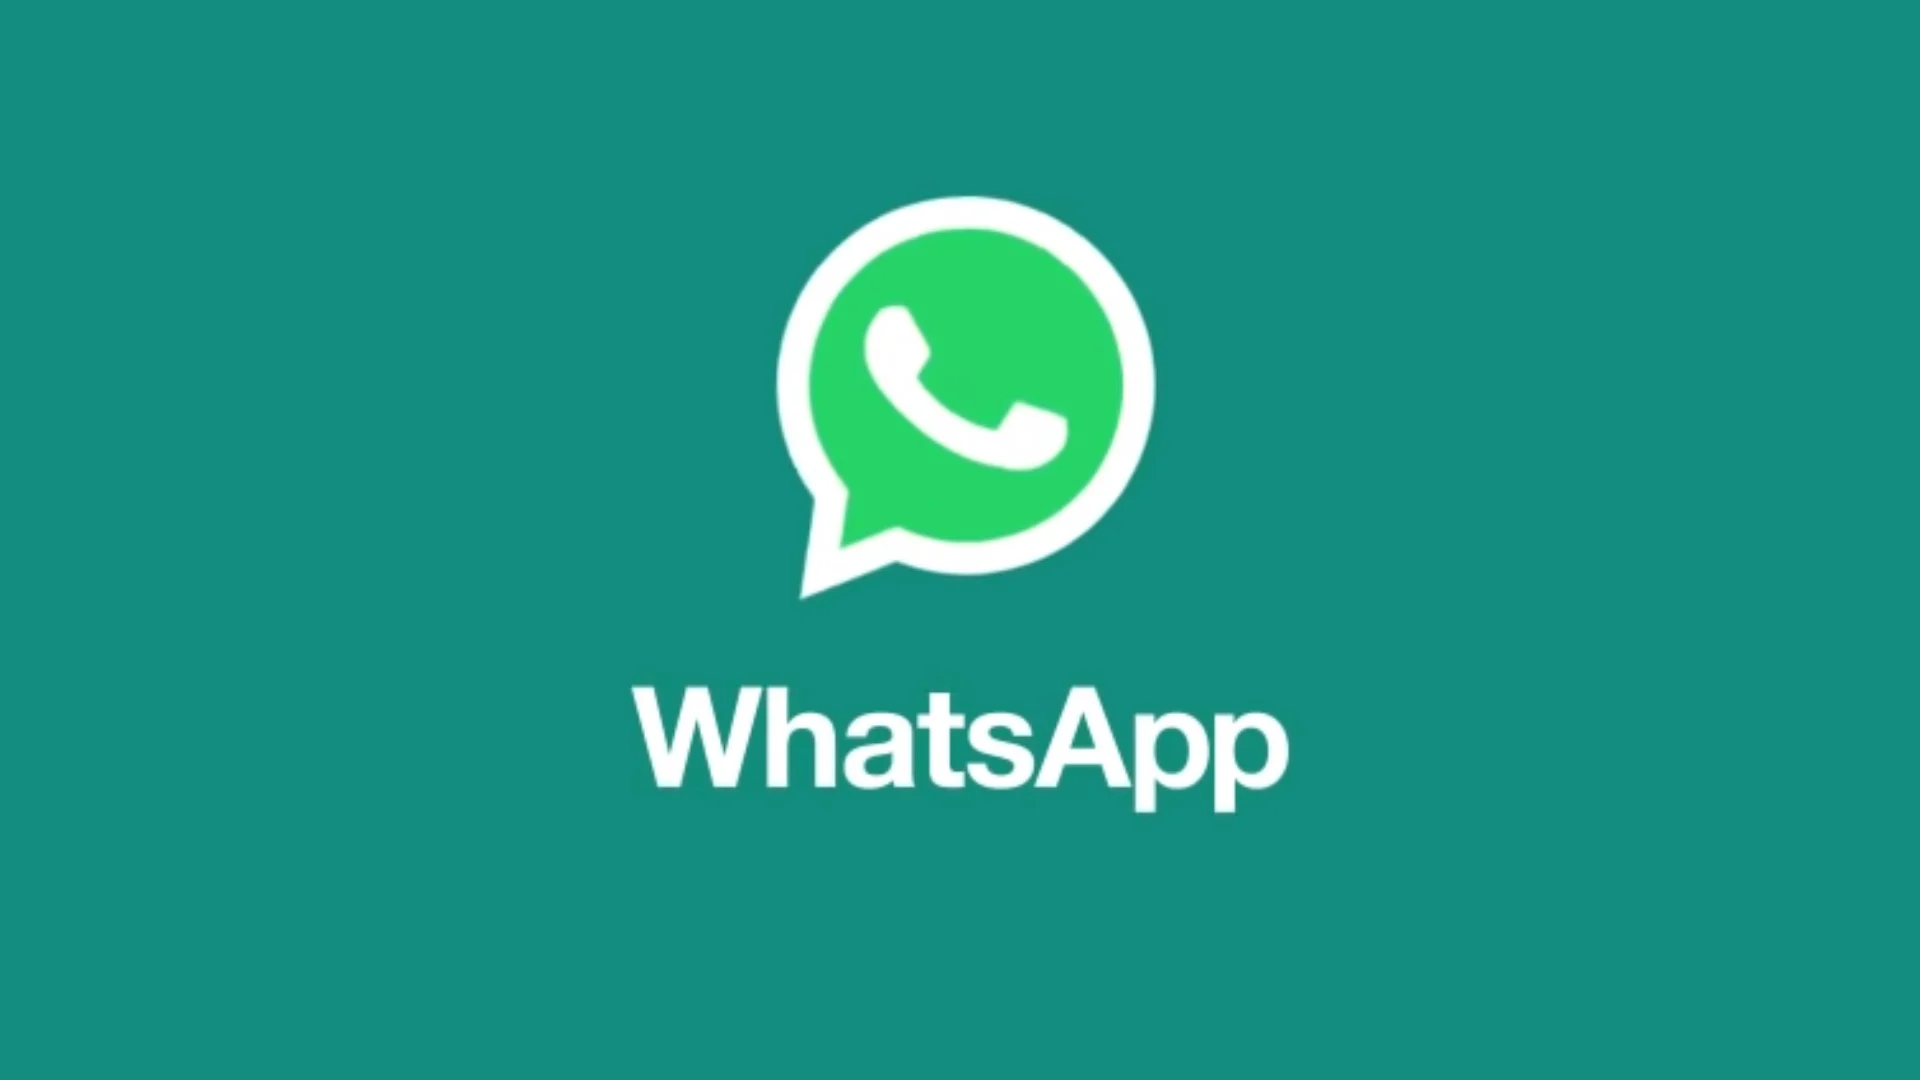 WhatsApp on Wear OS